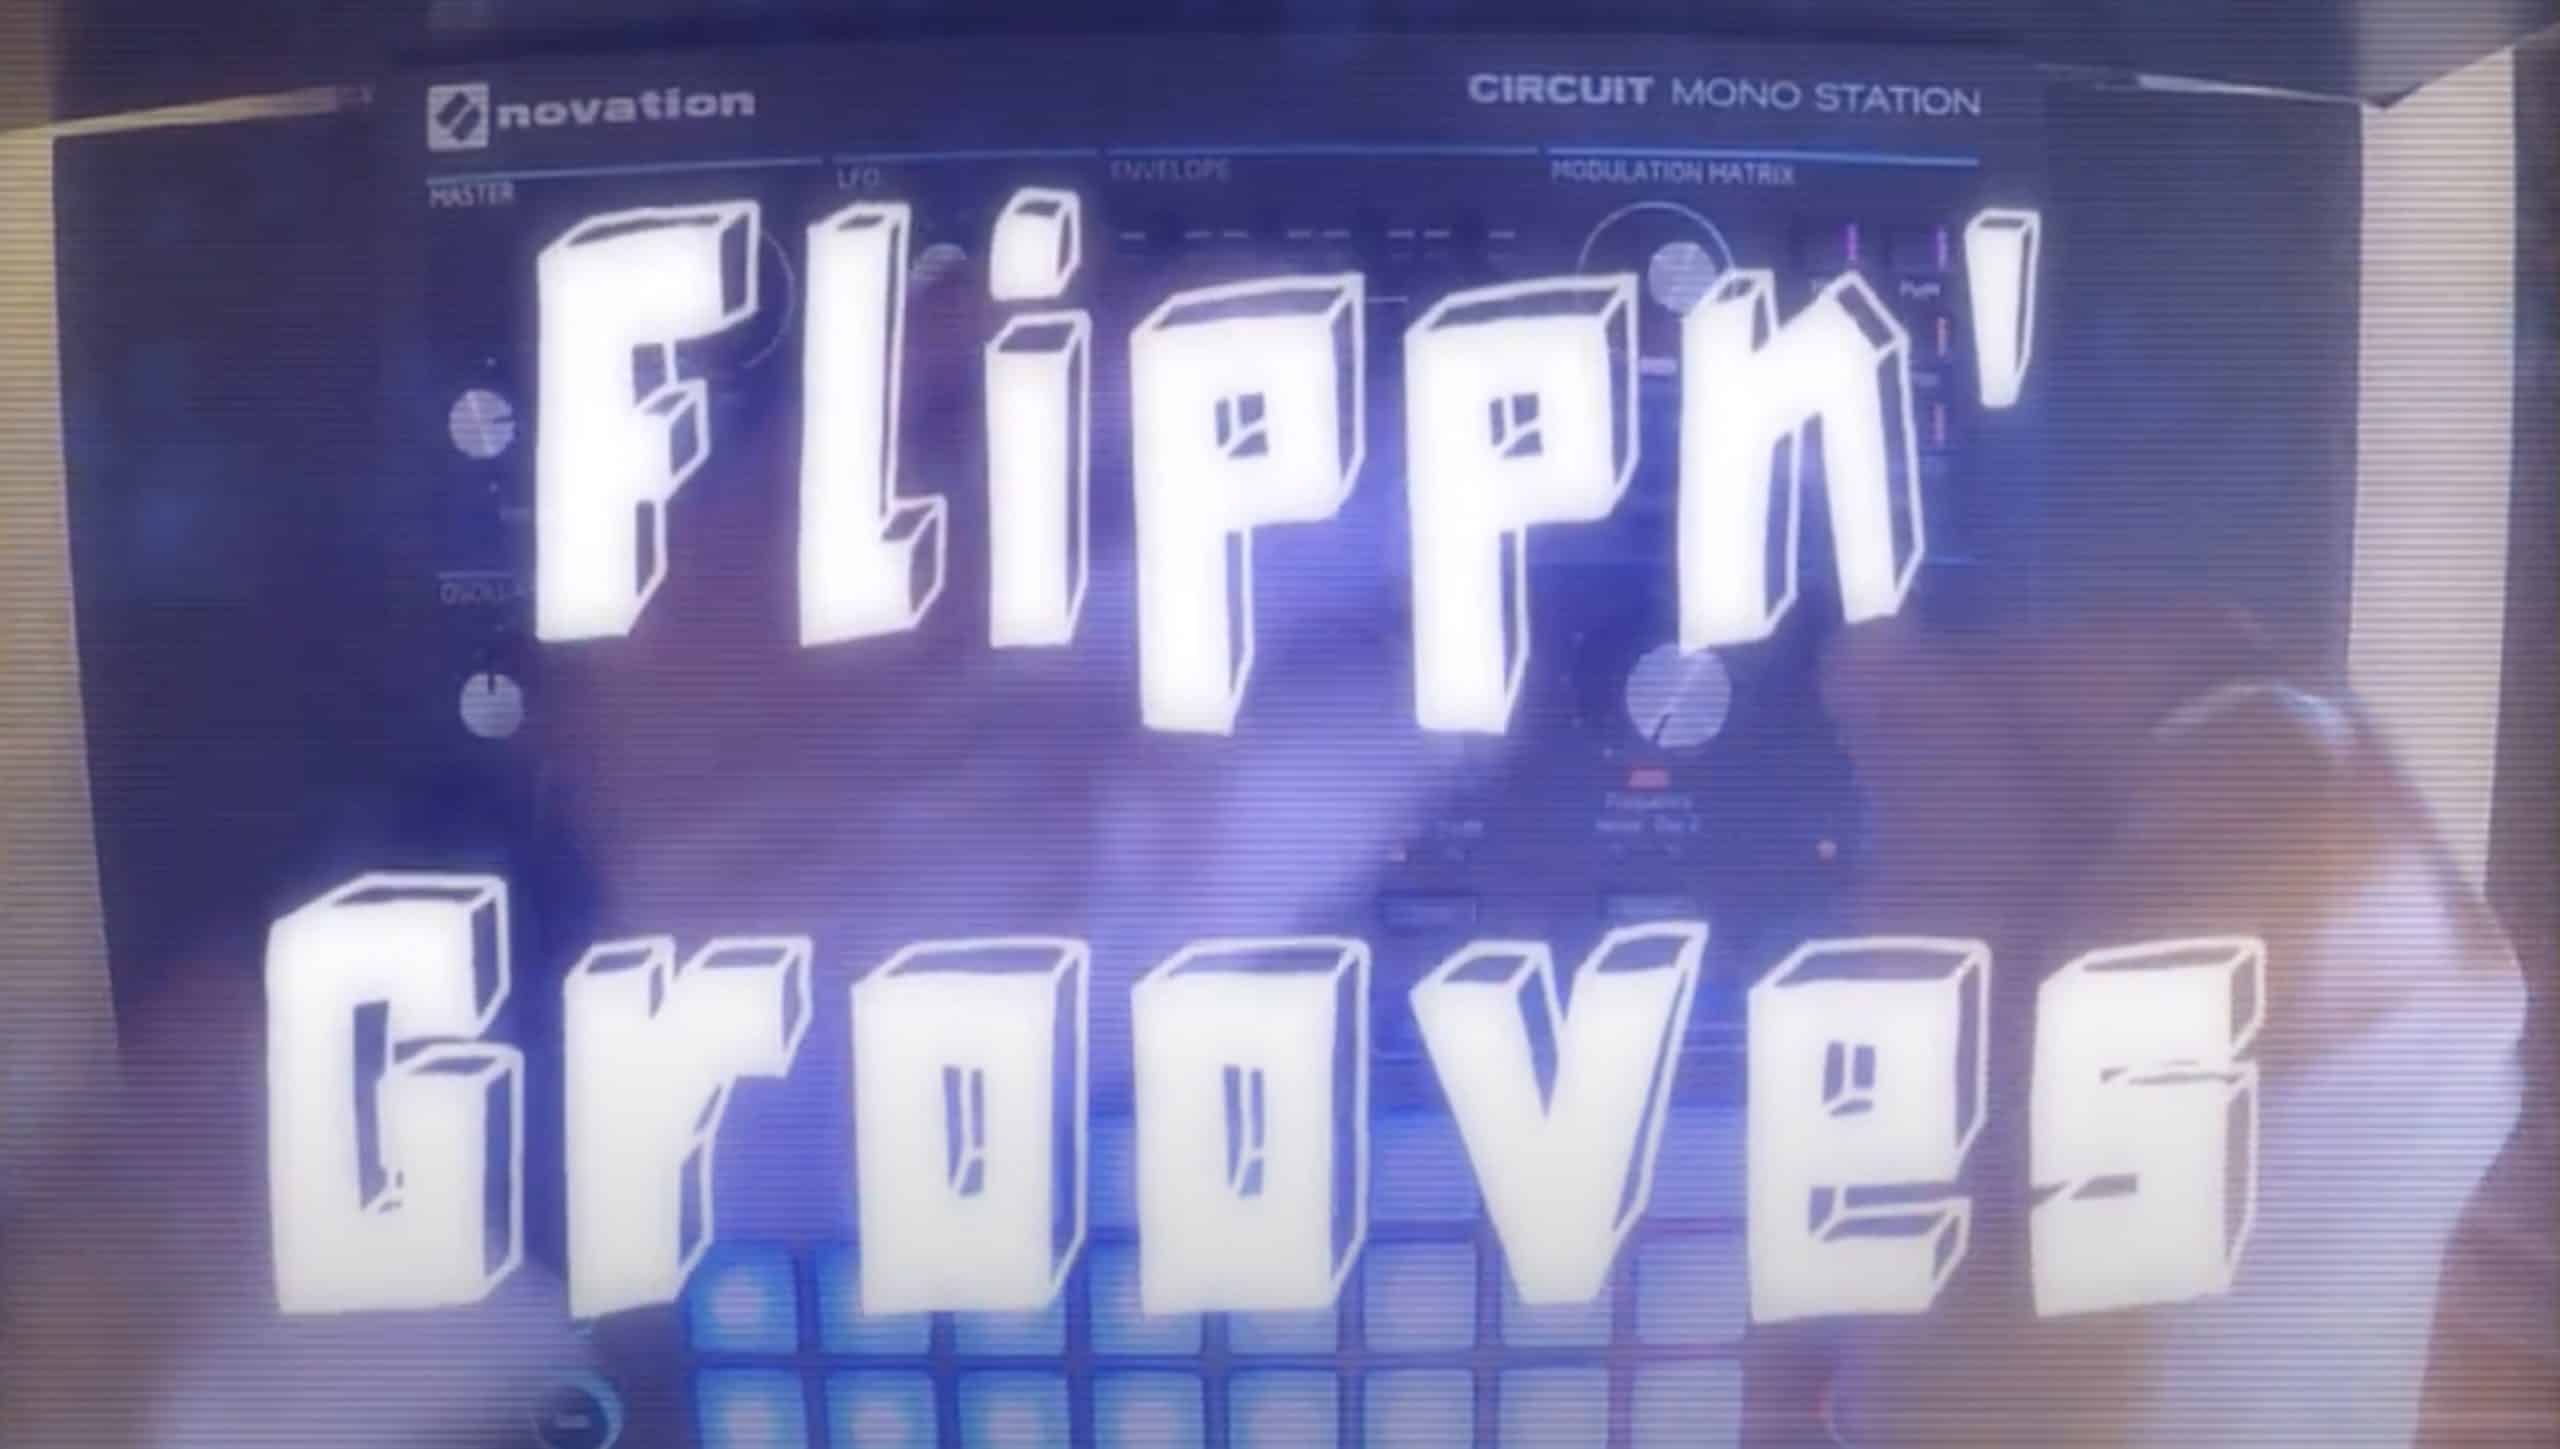 Big City presents Flippn’ Grooves for Novation Monostation scaled